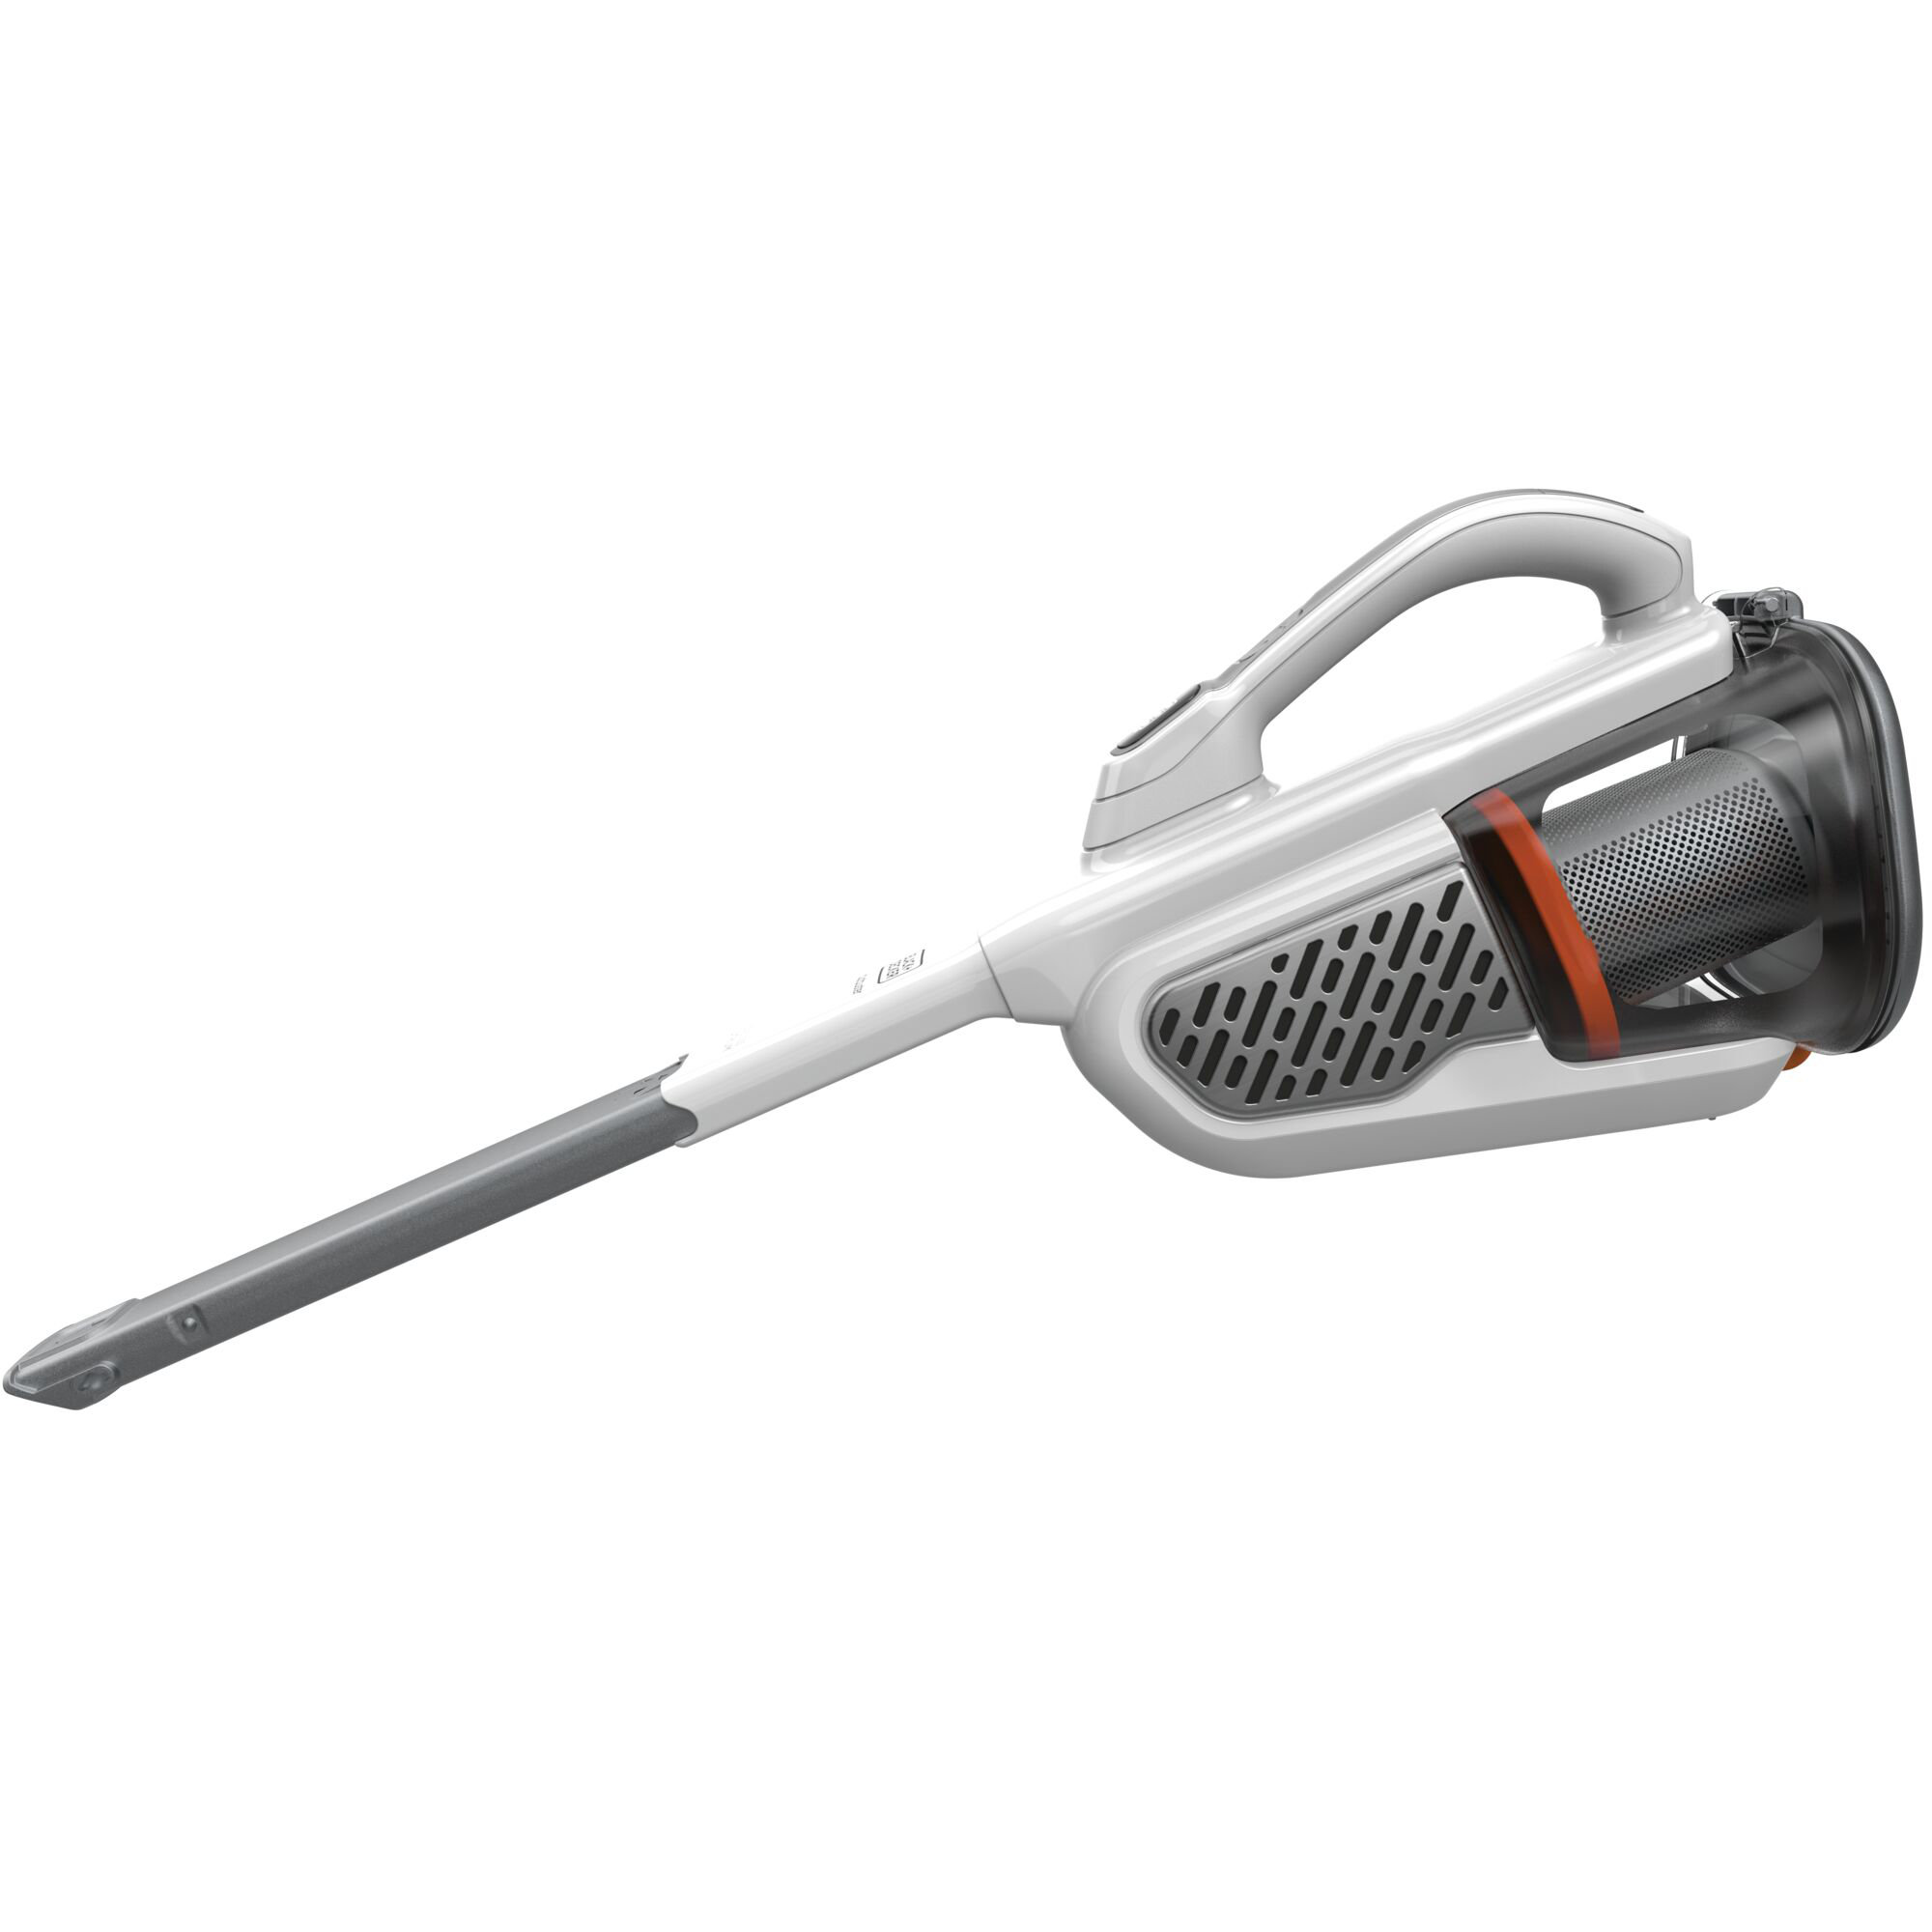 Black + Decker Dustbuster® Bagless Handheld Vacuum & Reviews